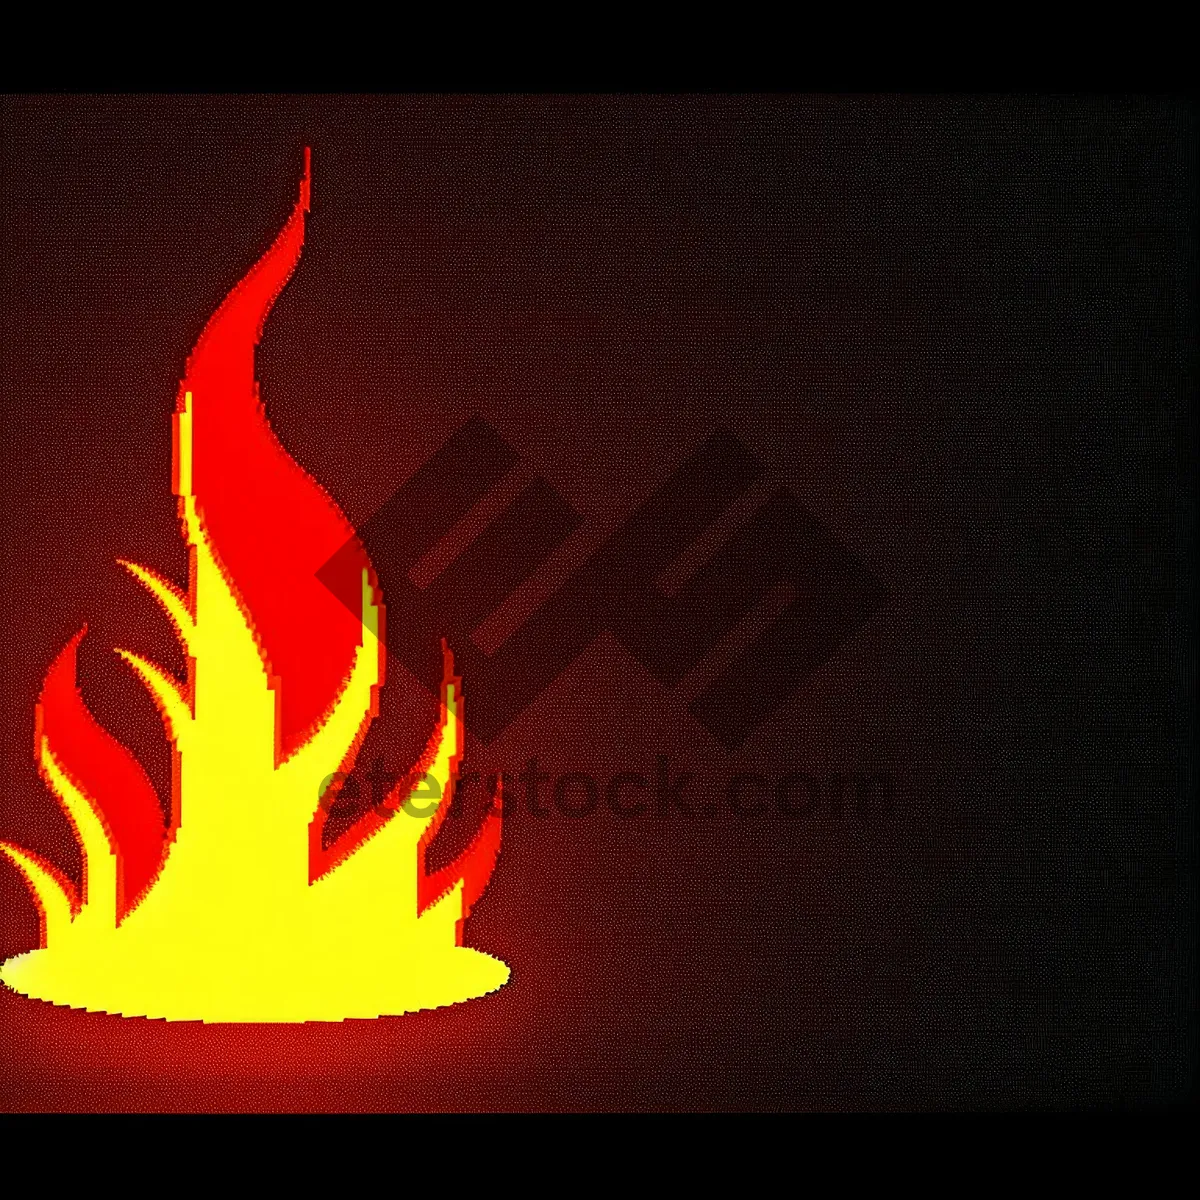 Picture of Blazing Firelight: A Fiery Glow in the Dark.